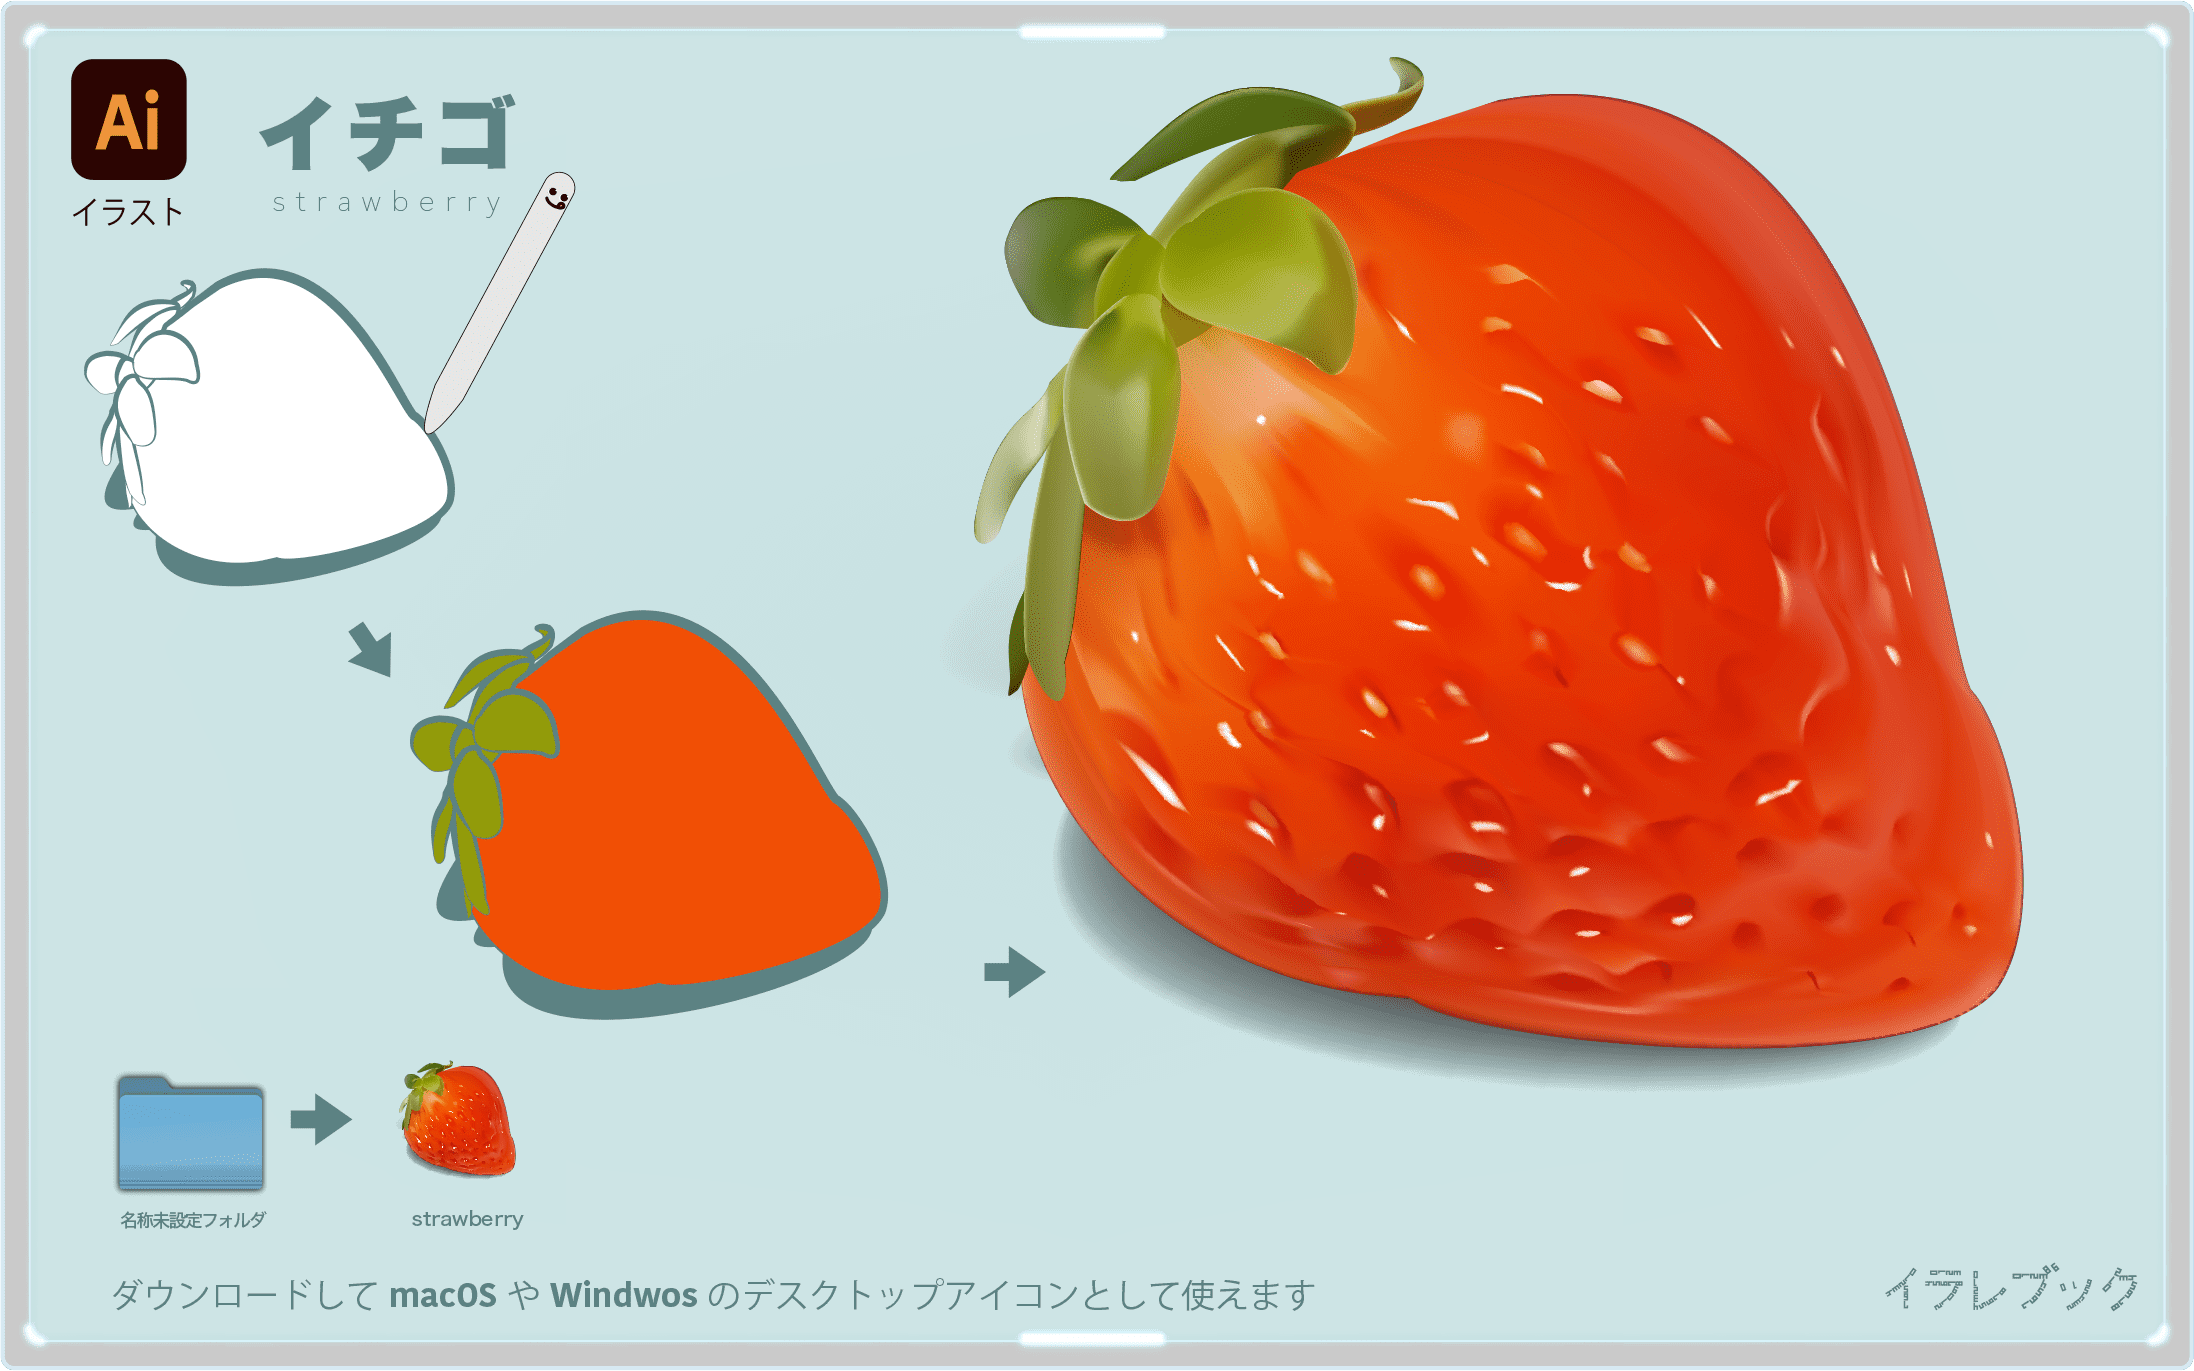 苺はビタミンcとミネラルたっぷり 白い苺の歴史 品種も解説 Strawberry